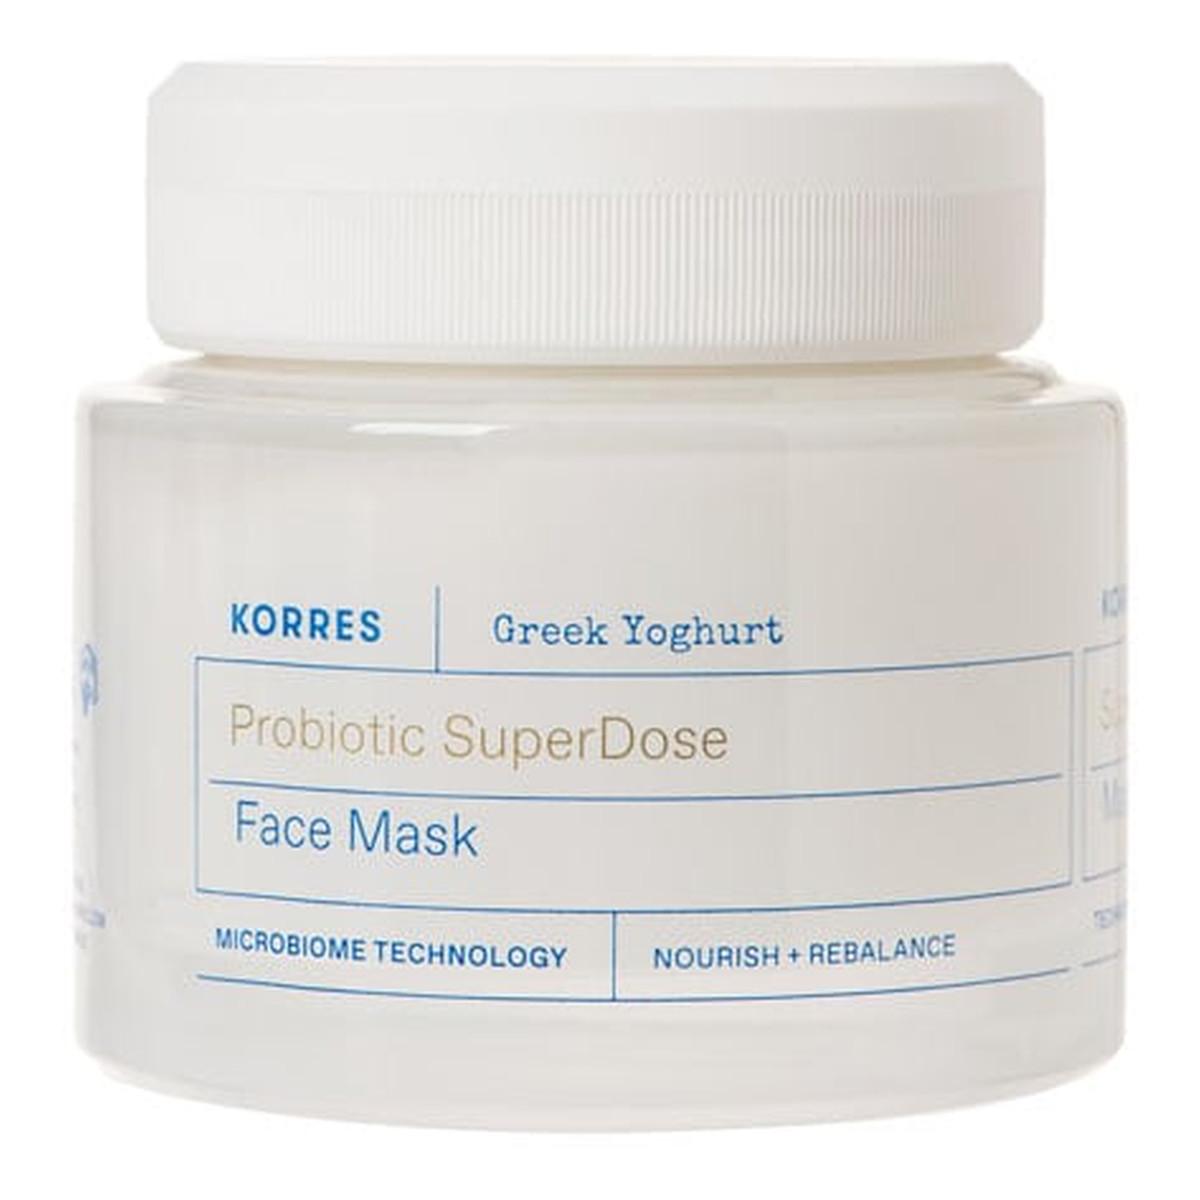 Korres Greek yoghurt probiotic super dose face mask nawilżająca maseczka do twarzy 100ml